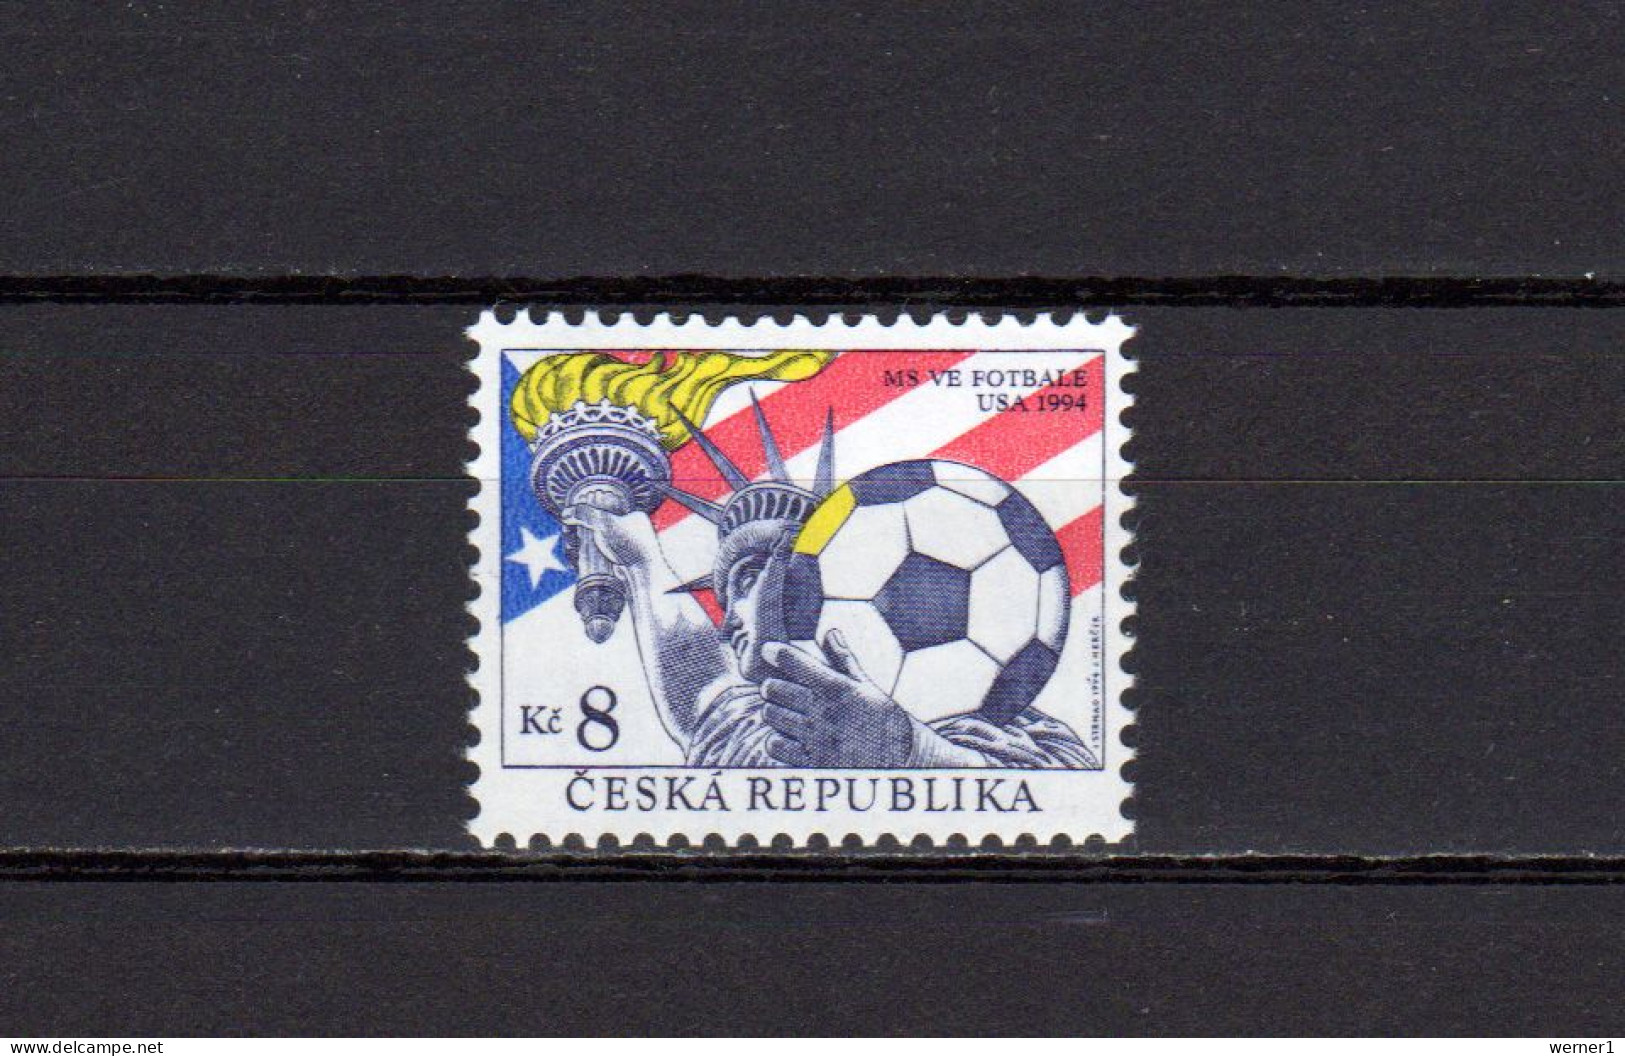 Czech Republic 1994 Football Soccer World Cup Stamp MNH - 1994 – Vereinigte Staaten